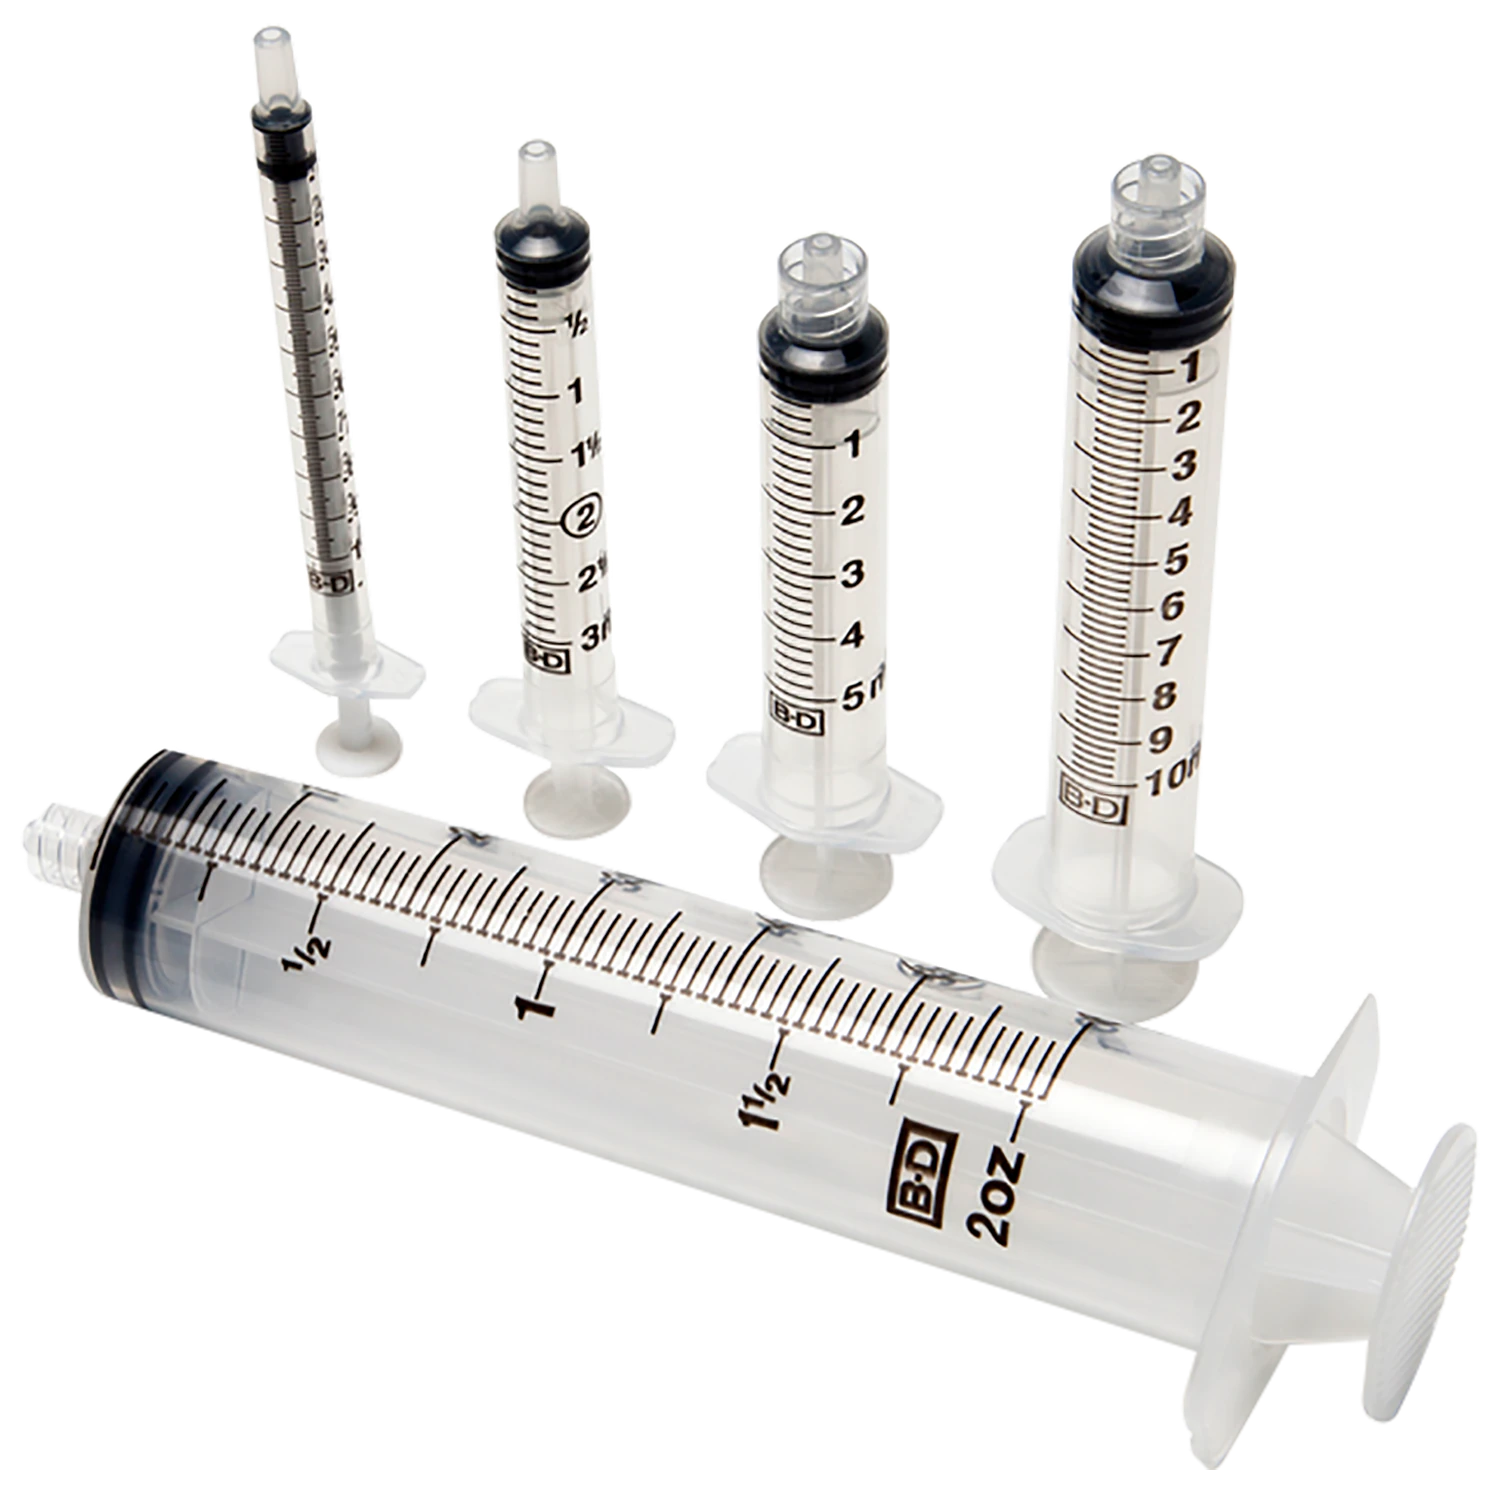 BD Luer-Lok™ Syringe sterile, single use, 3 mL - 309657